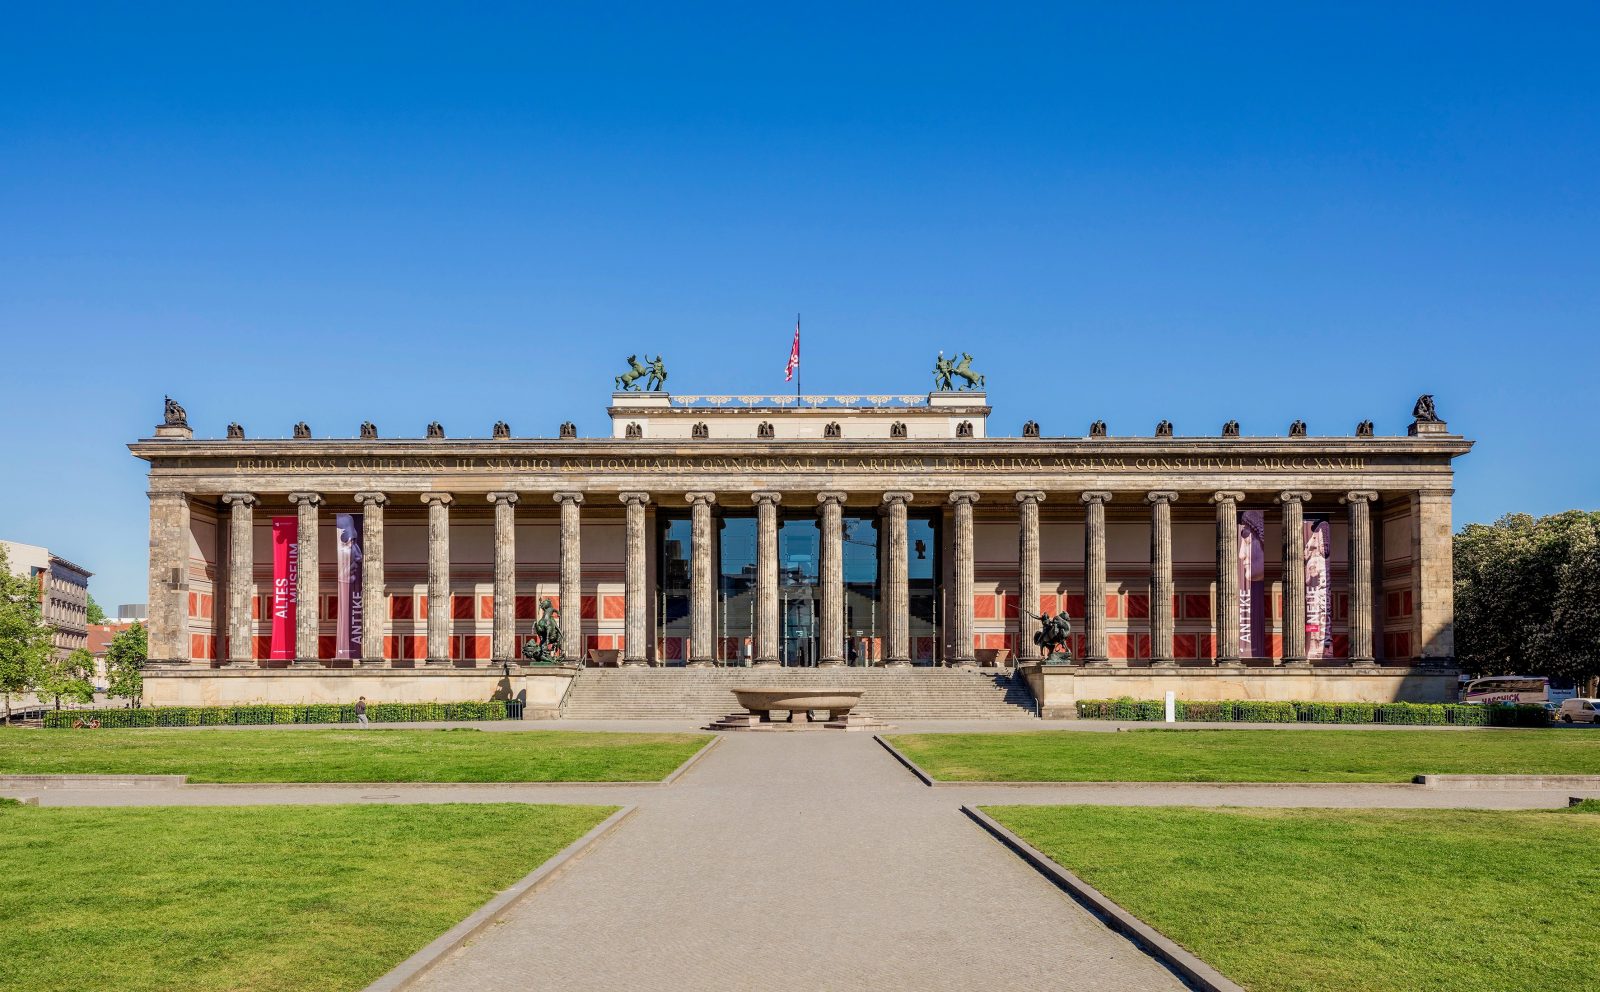 Eines der wichtigsten Bauwerke von Karl Friedrich Schinkel in Berlin: das Alte Museum mit den typisch klassizistischen Säulen. Foto: David von Becker